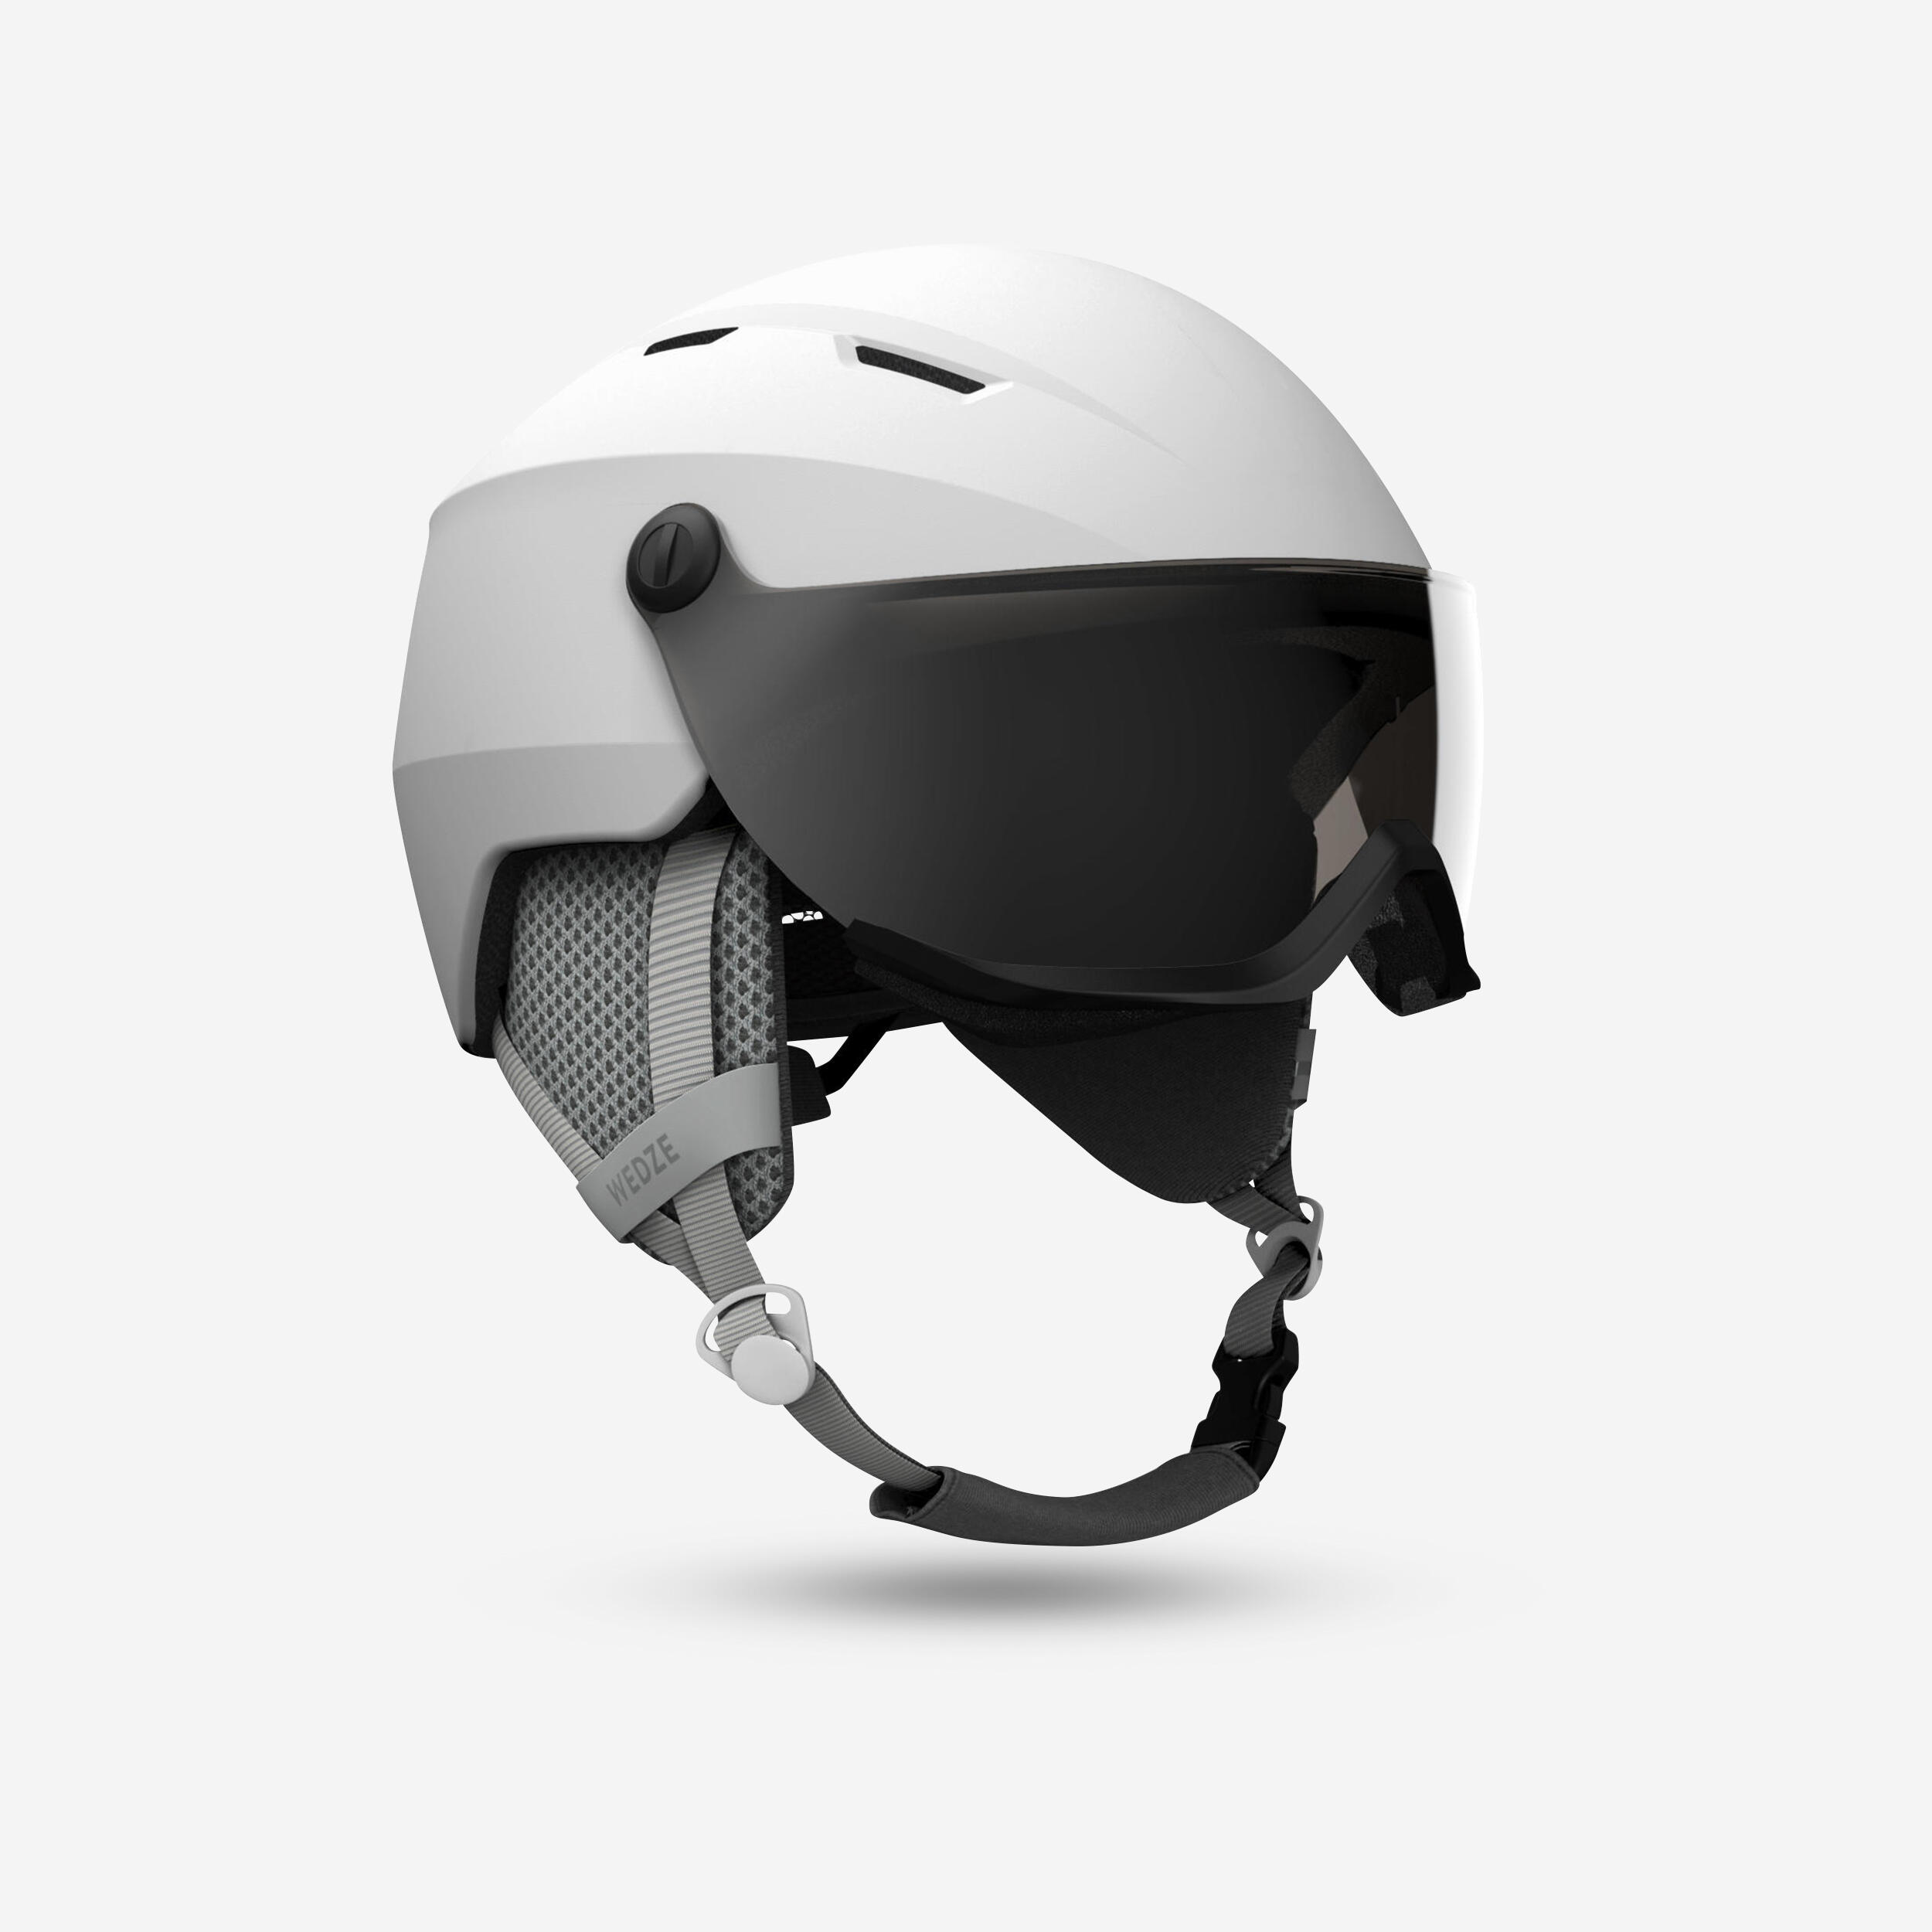 Downhill Ski Helmet With Visor